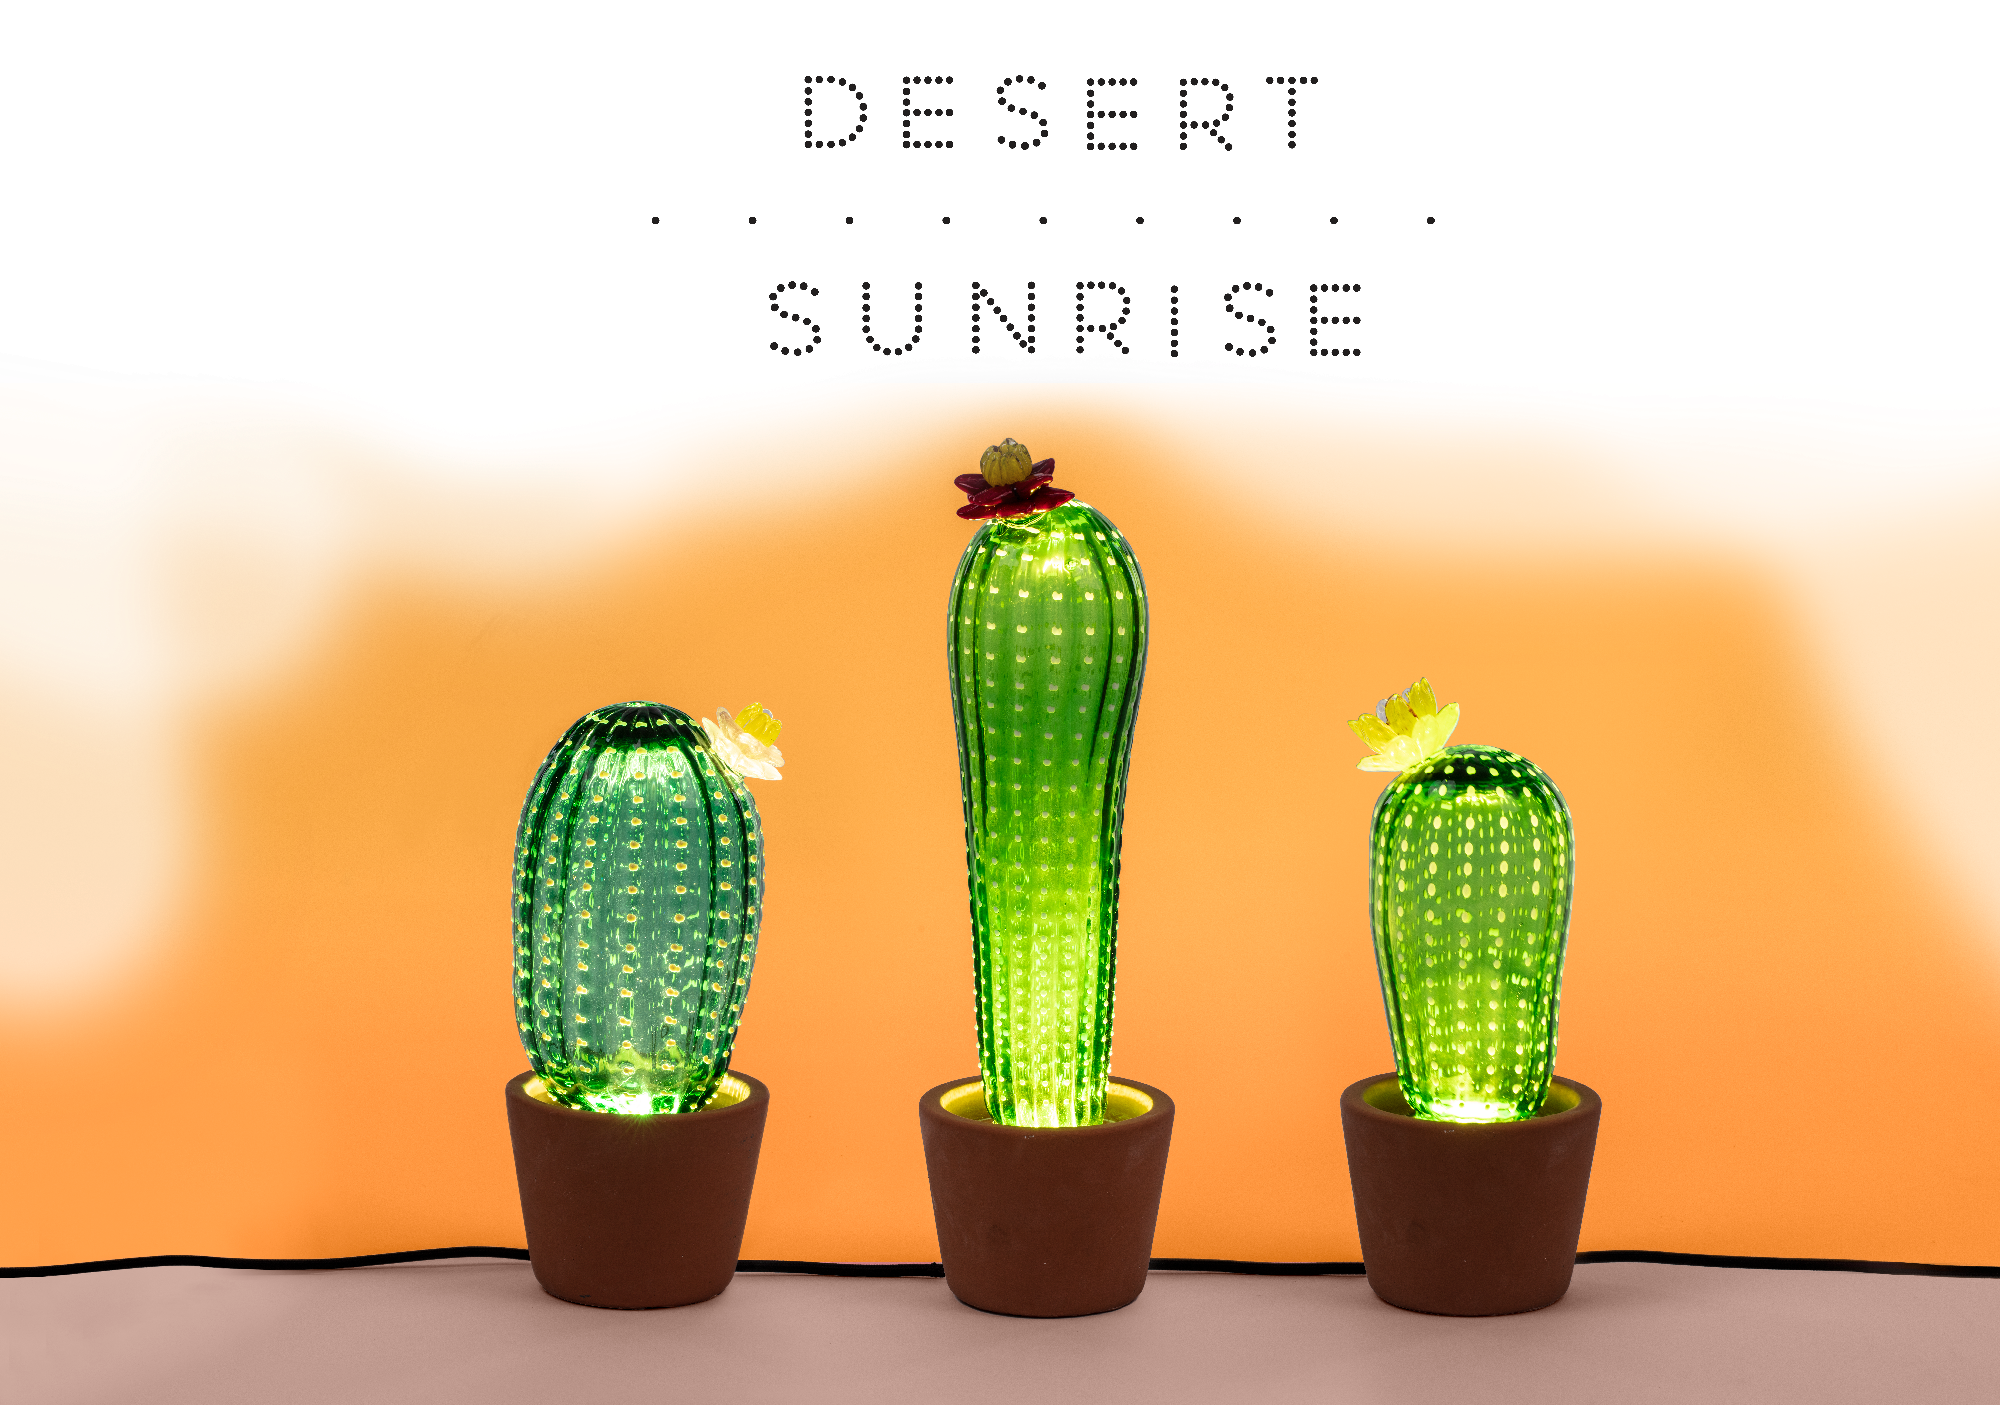 DesertSunrise_logo_centered